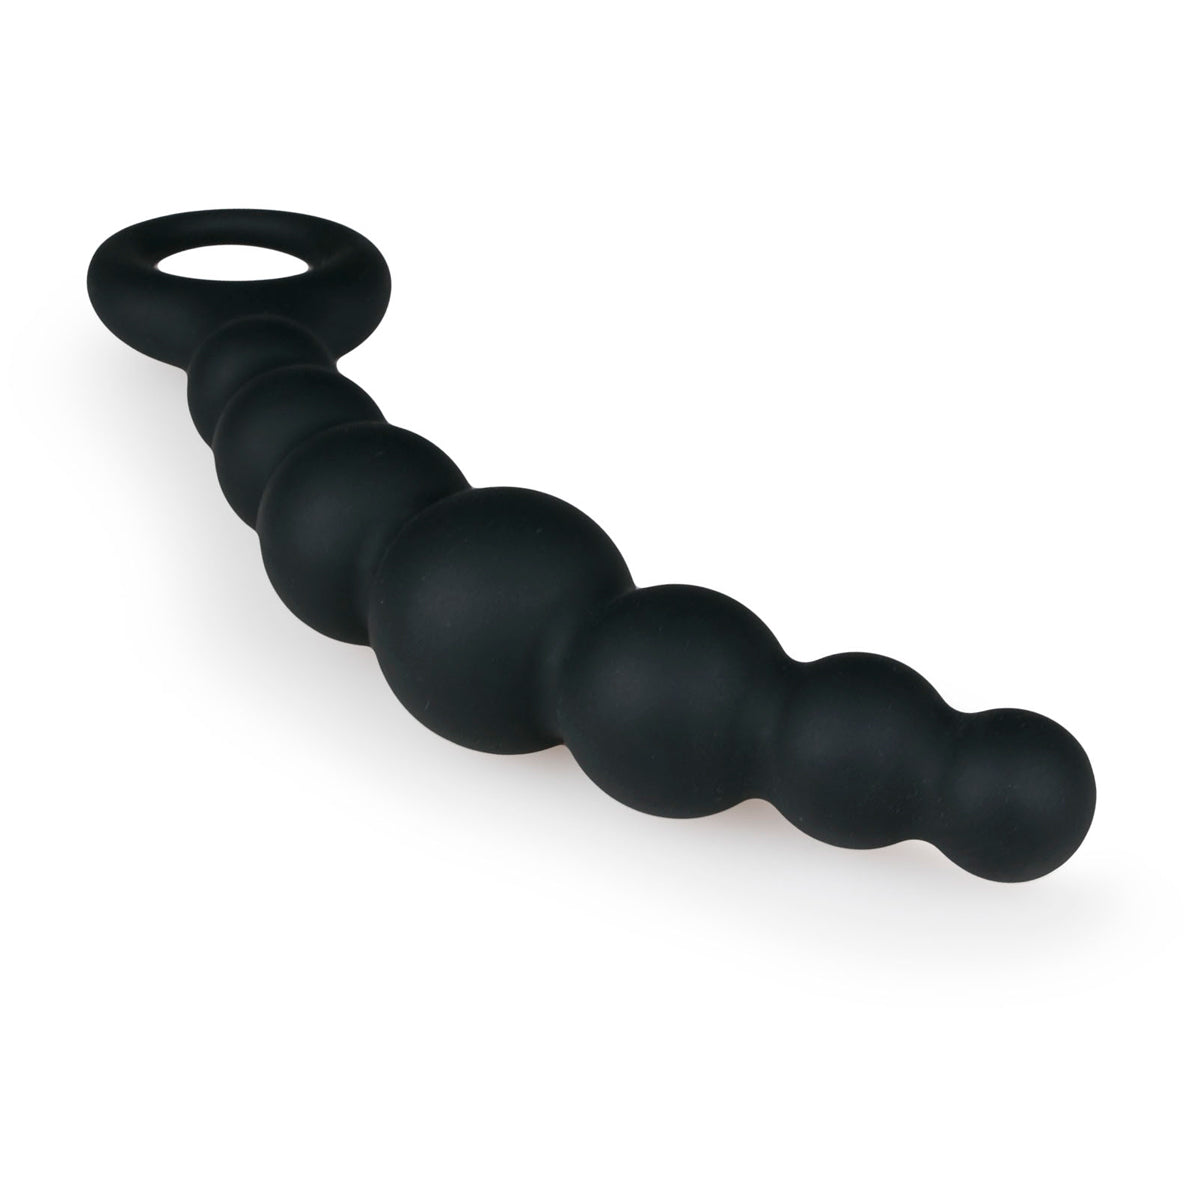 Zwarte anaal toy van het merk Easytoys. Geschikt voor de beginner. Anaal toys van Easytoys zijn verkrijgbaar bij Flavourez